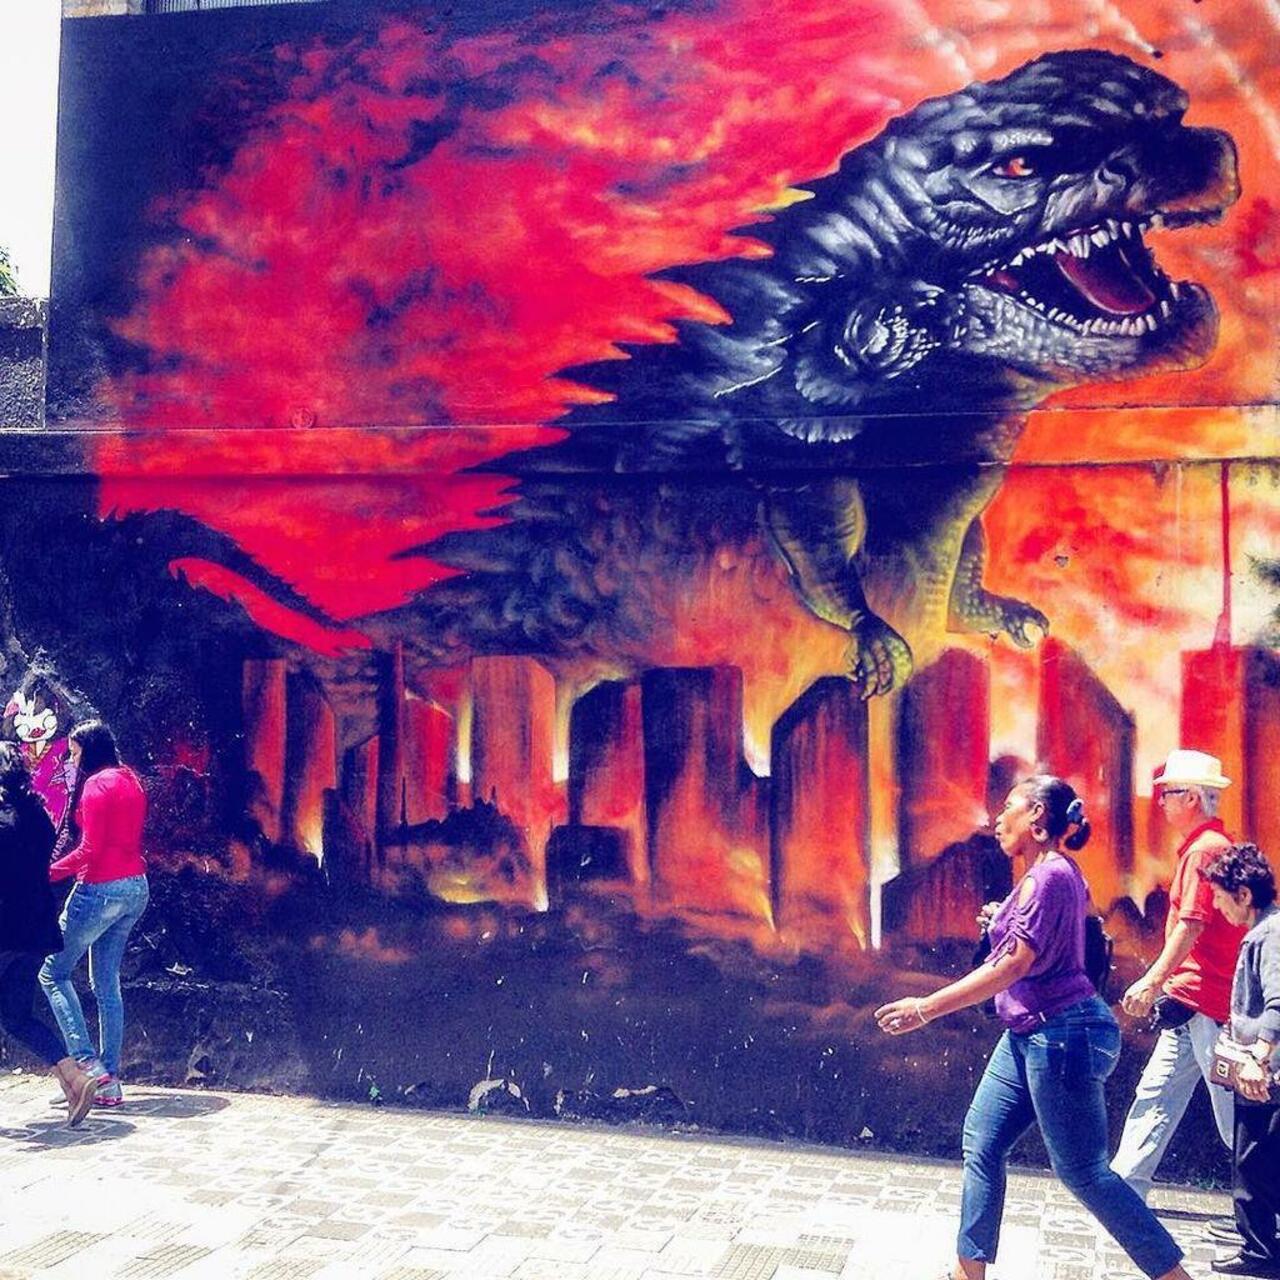 #graffiti #art #street #streetart #mural #muralart #murals #streetartist #streetartsaopaulo #saopaulo #brazil #bras… https://t.co/6vnzXntGEd